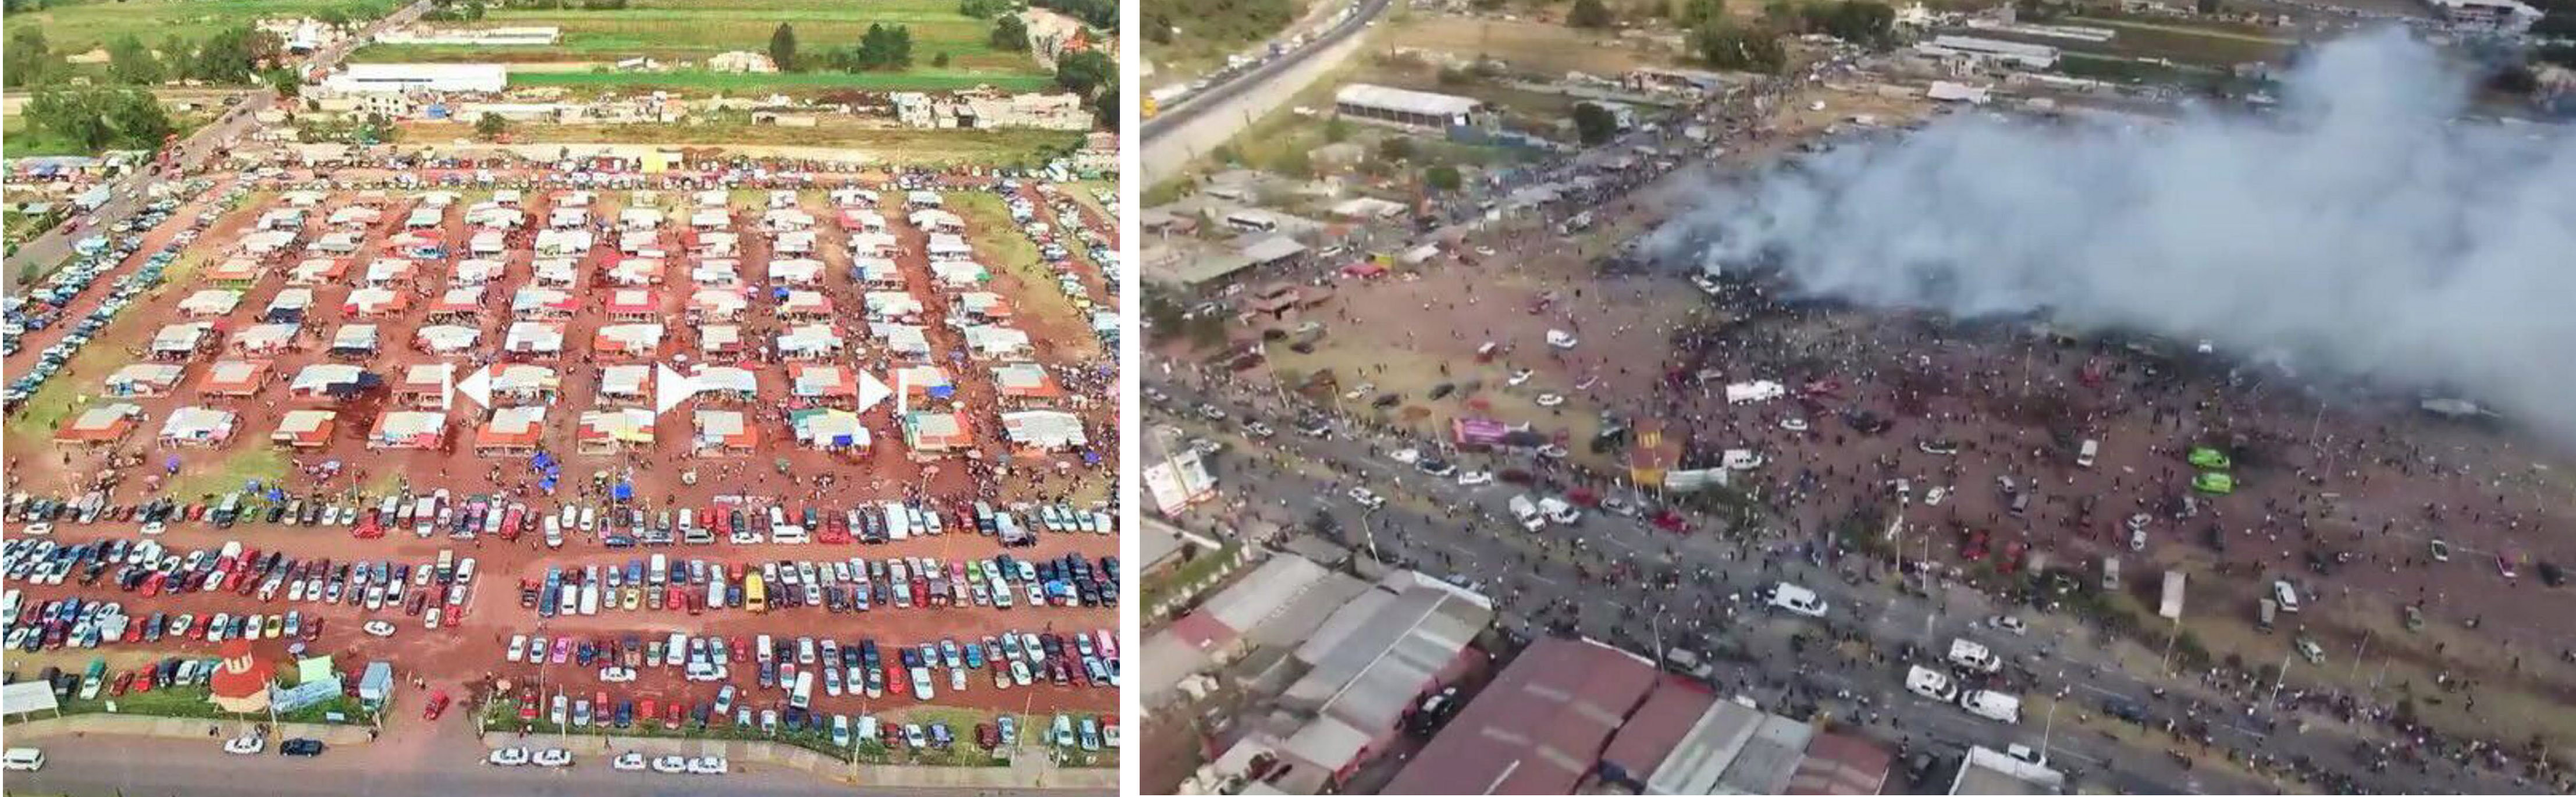 У Мексиці на ринку феєрверків стався вибух